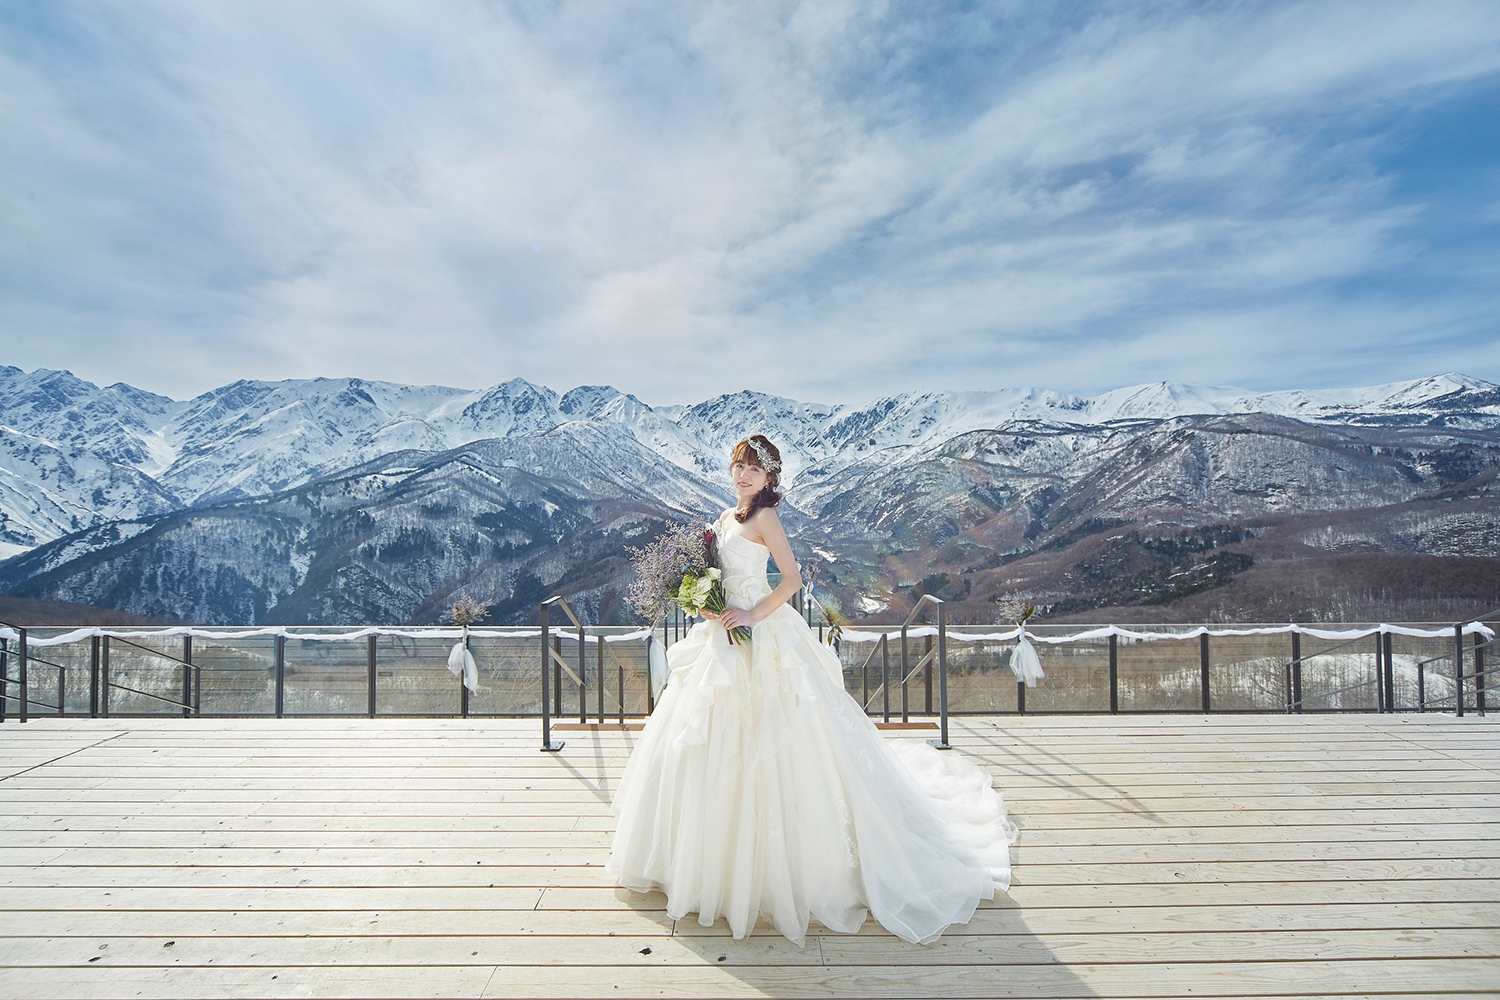 HAKUBA MOUNTAIN HARBOR WEDDING